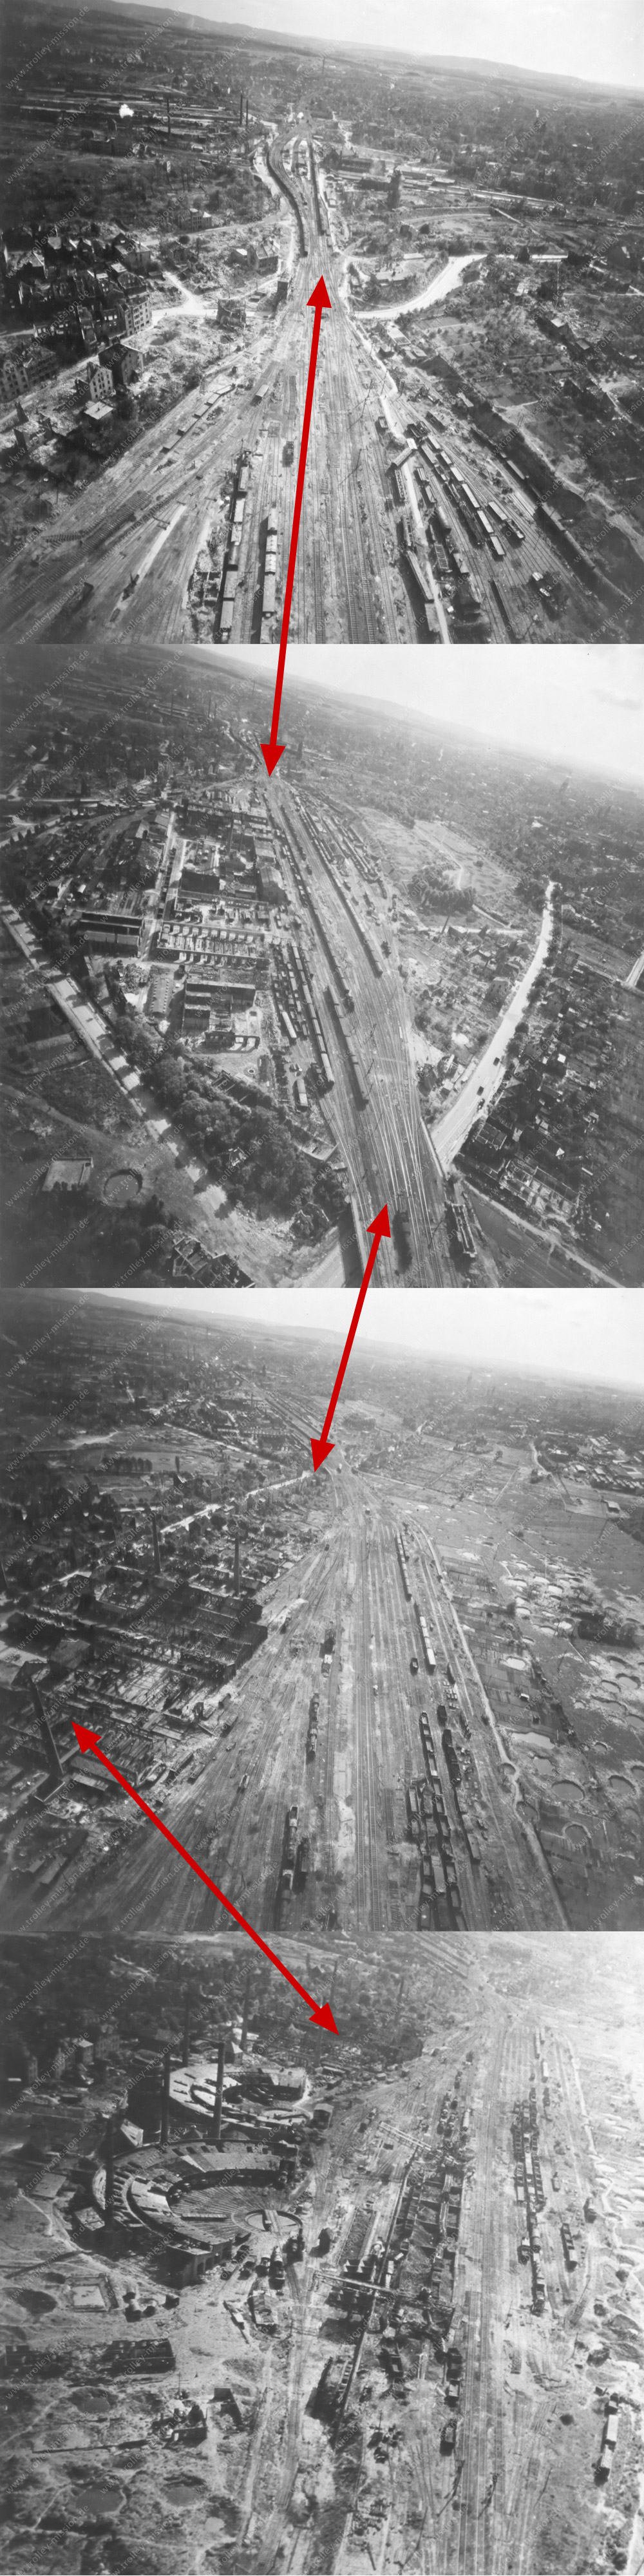 Eisenbahnstandort Osnabrück nach den Fliegerbomben im Zweiten Weltkrieg